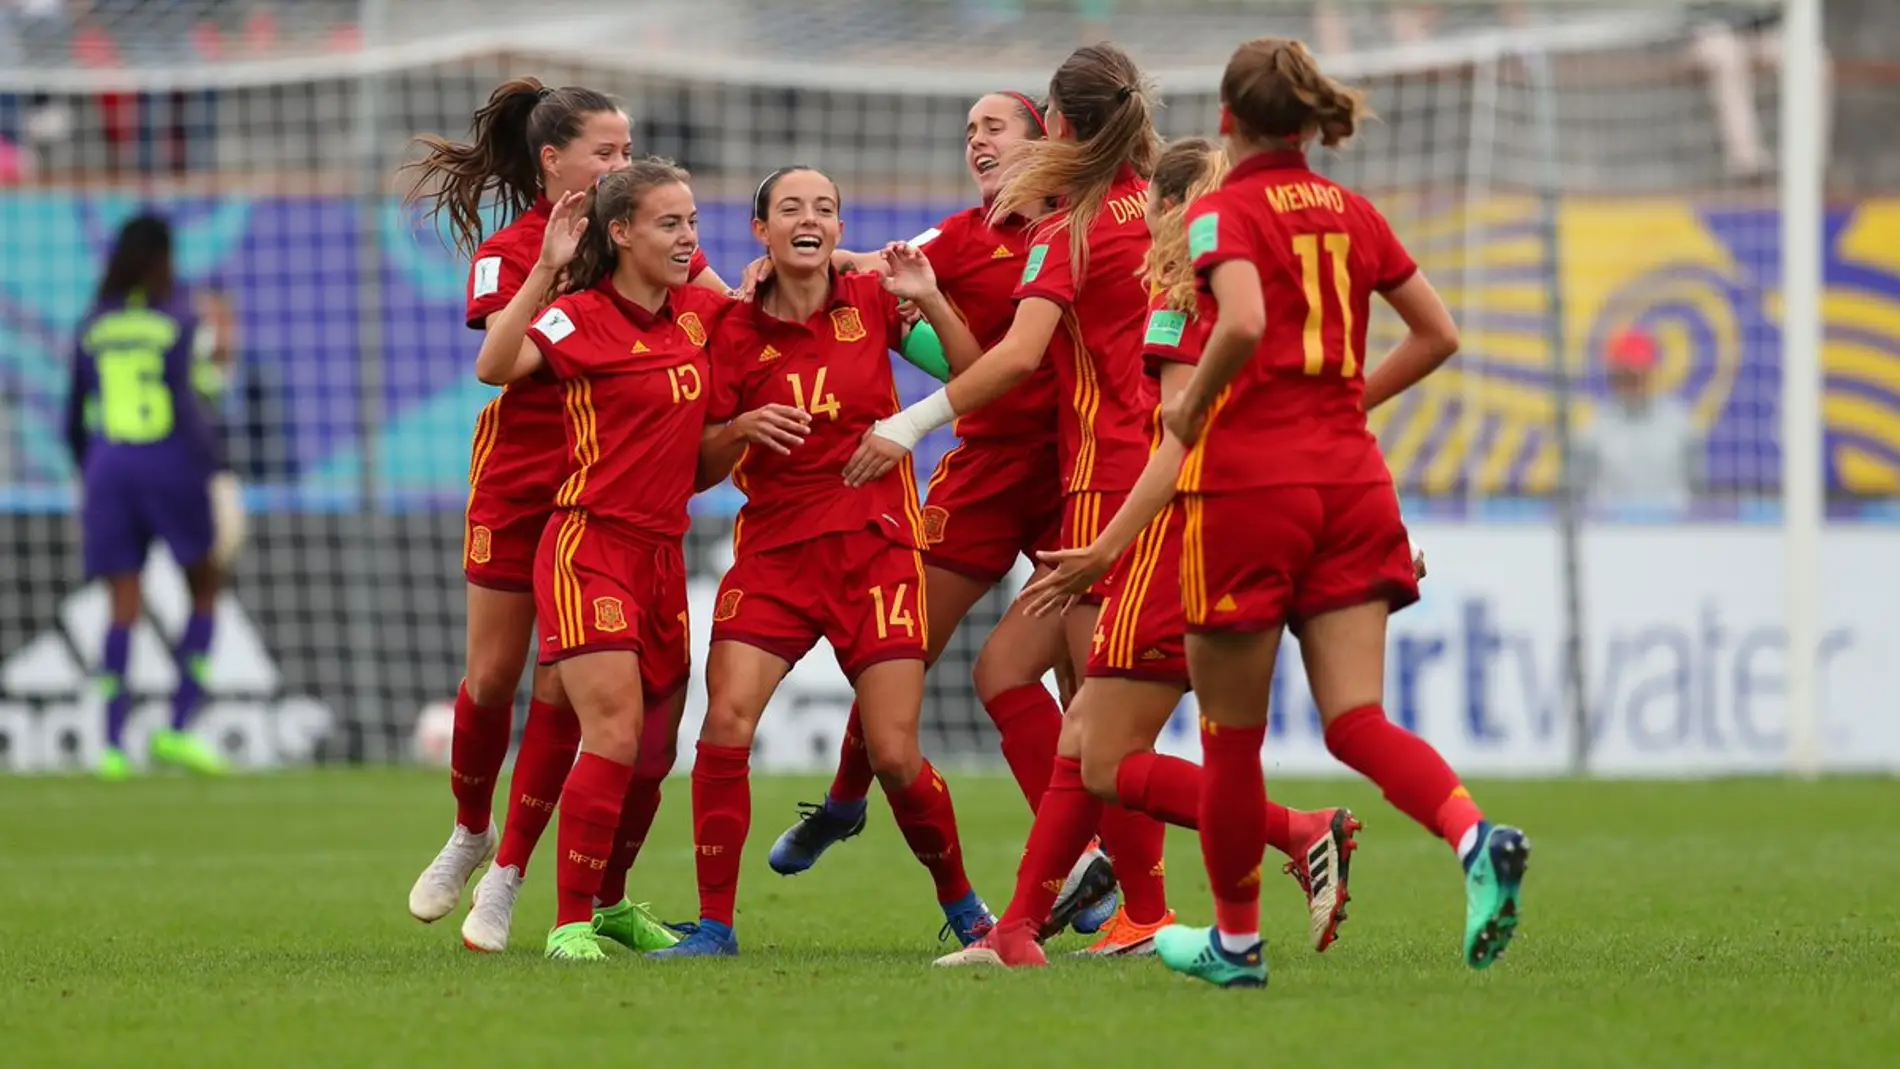 Las jugadoras de la selección española celebran uno de los goles contra Nigeria